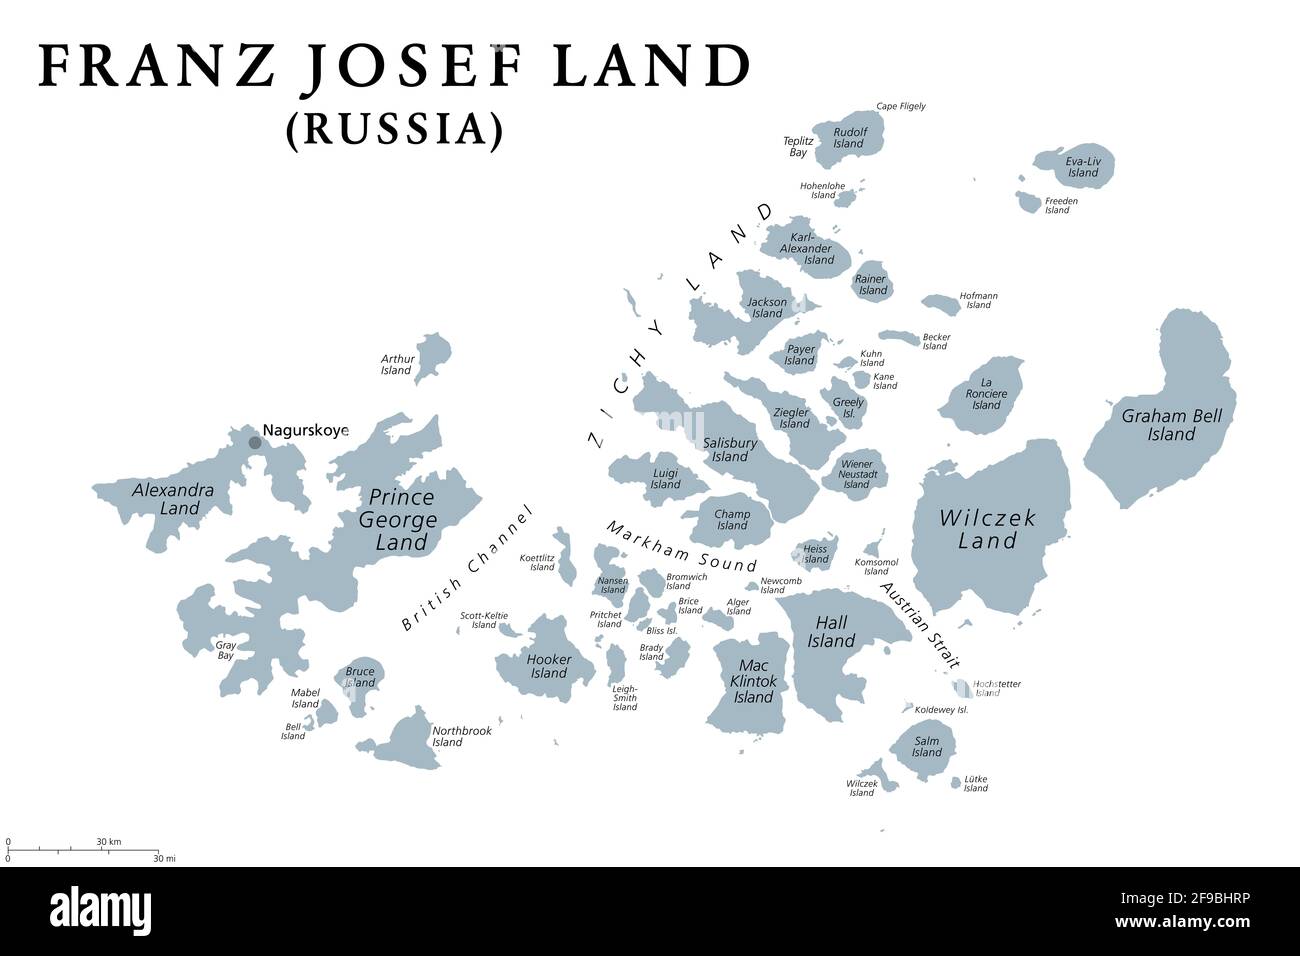 Franz Josef Land, mappa politica grigia. Arcipelago russo nell'Oceano Artico, la parte più settentrionale dell'Arkhangelsk Oblast. Foto Stock